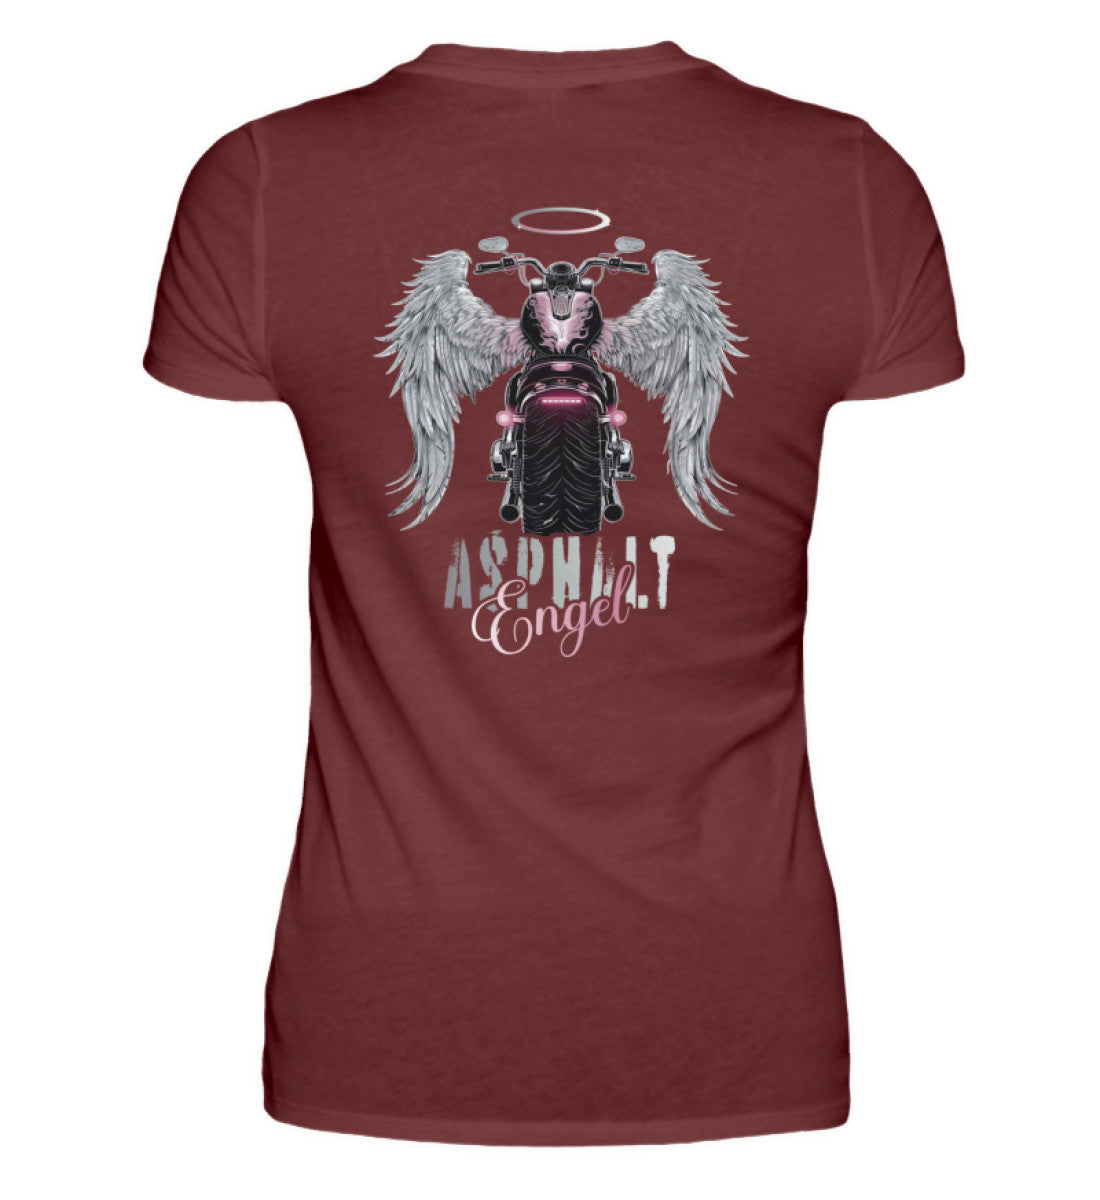 Ein Bikerin T-Shirt für Motorradfahrerinnen von Wingbikers mit dem Aufdruck, Asphalt Engel - mit Flügeln, - mit Back Print, in weinrot.